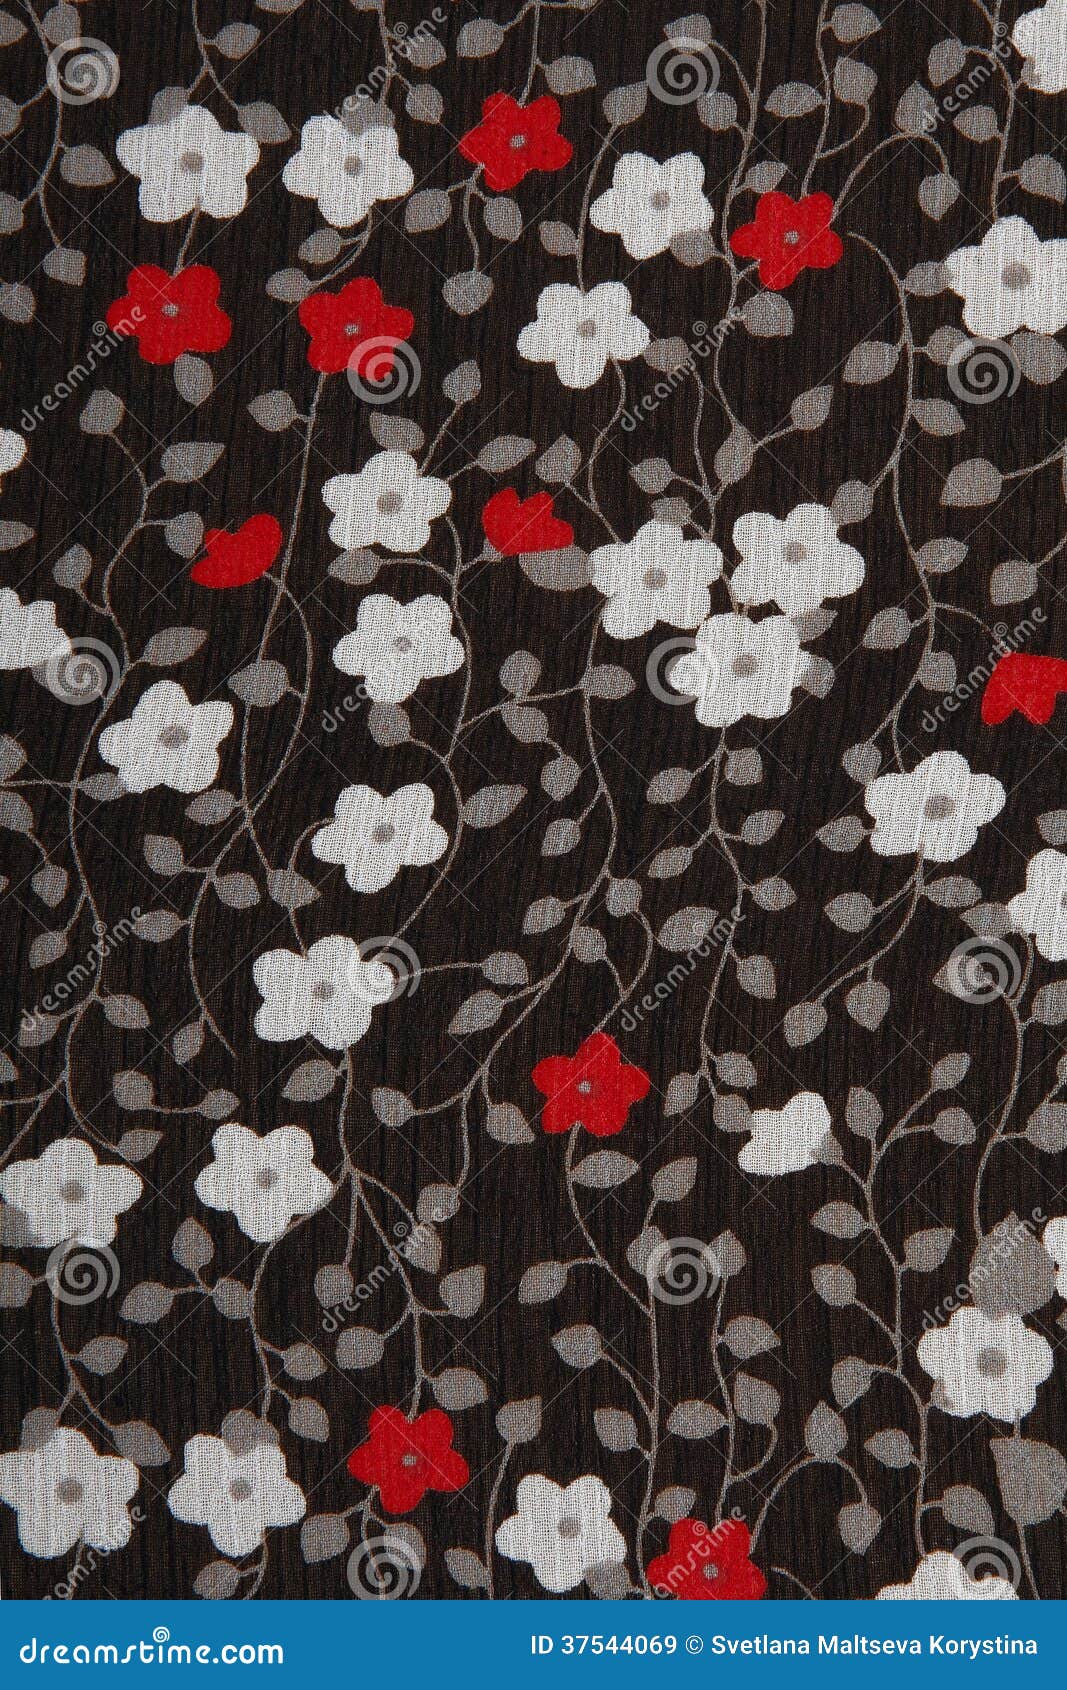 Dureza Grafico Ru Tela Negra Del Fondo Con Las Flores Rojas Y Blancas Imagen de archivo -  Imagen de detalles, tinte: 37544069